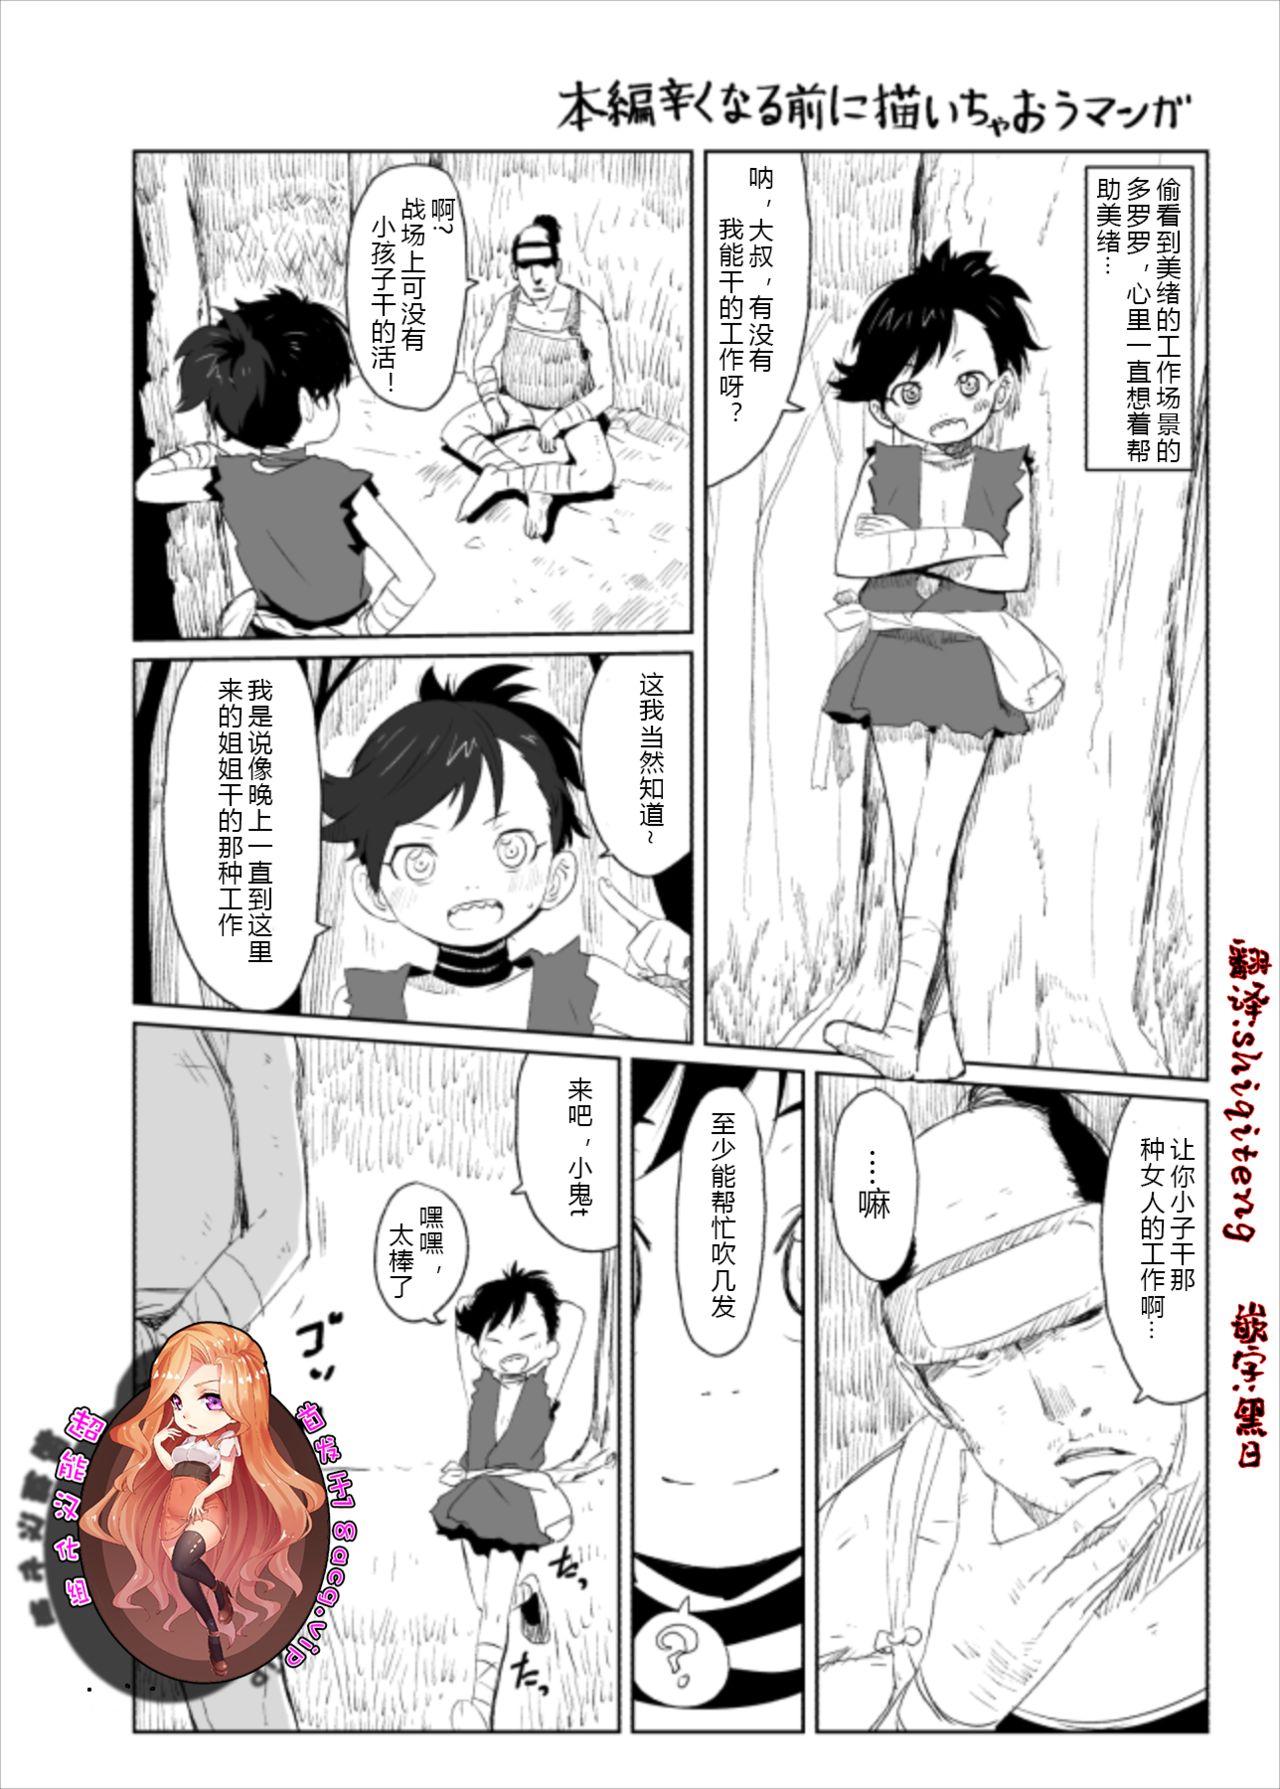 Sensual Dororo Rakugaki Echi Manga - Dororo Breeding - Page 1